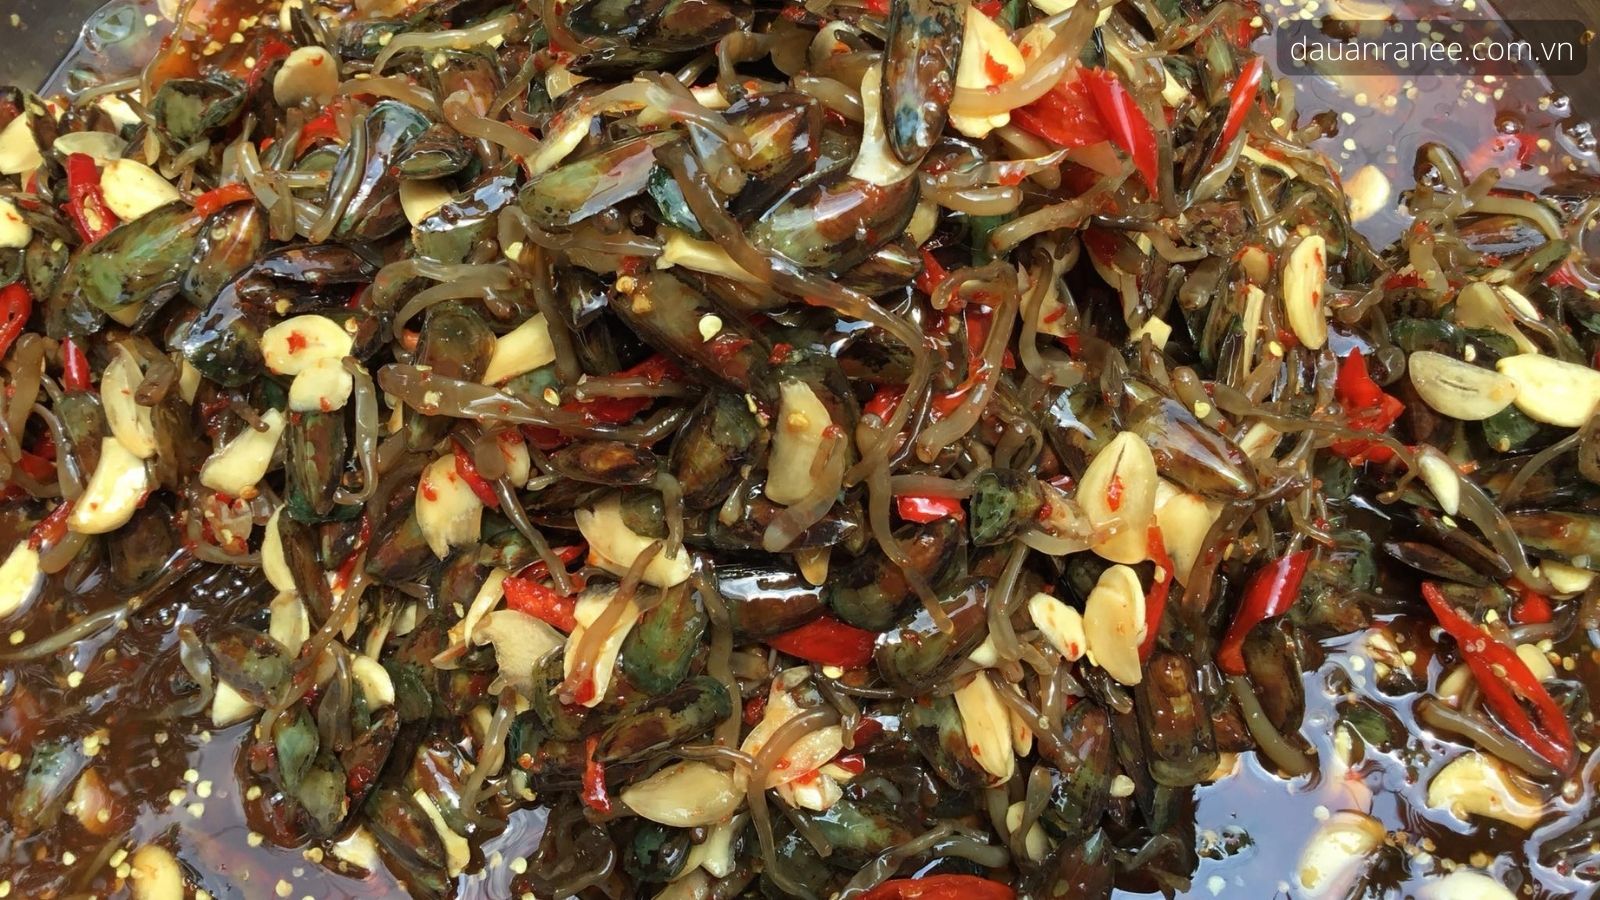 Cà xỉu - Món ngon đặc sản Kiên Giang làm quà nổi tiếng